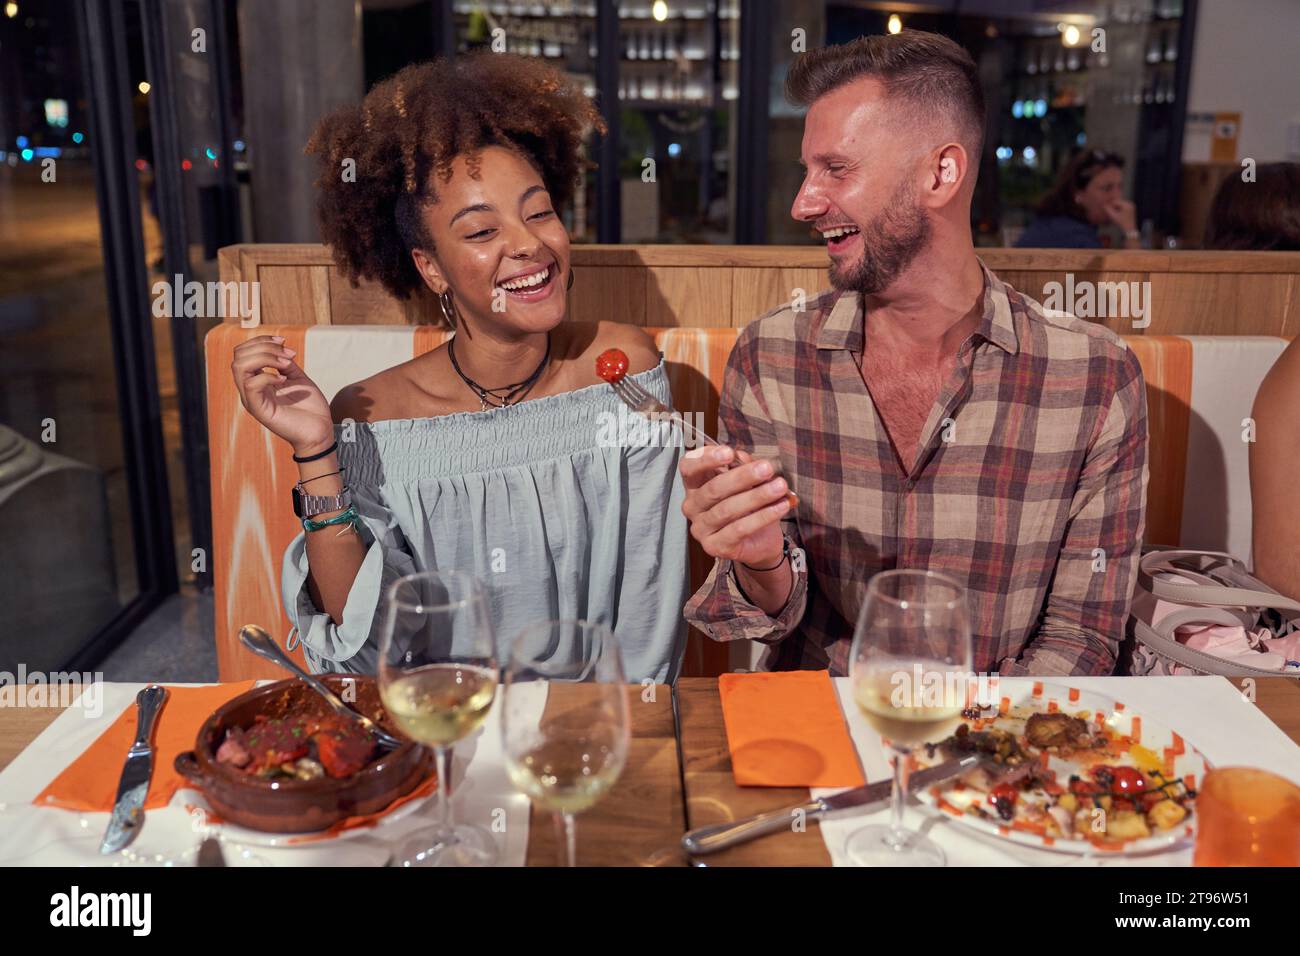 Positiver Mann, der der Afroamerikanerin Kirschtomate gibt, während er am Tisch mit Wein und leckeren Mahlzeiten im Restaurant sitzt Stockfoto